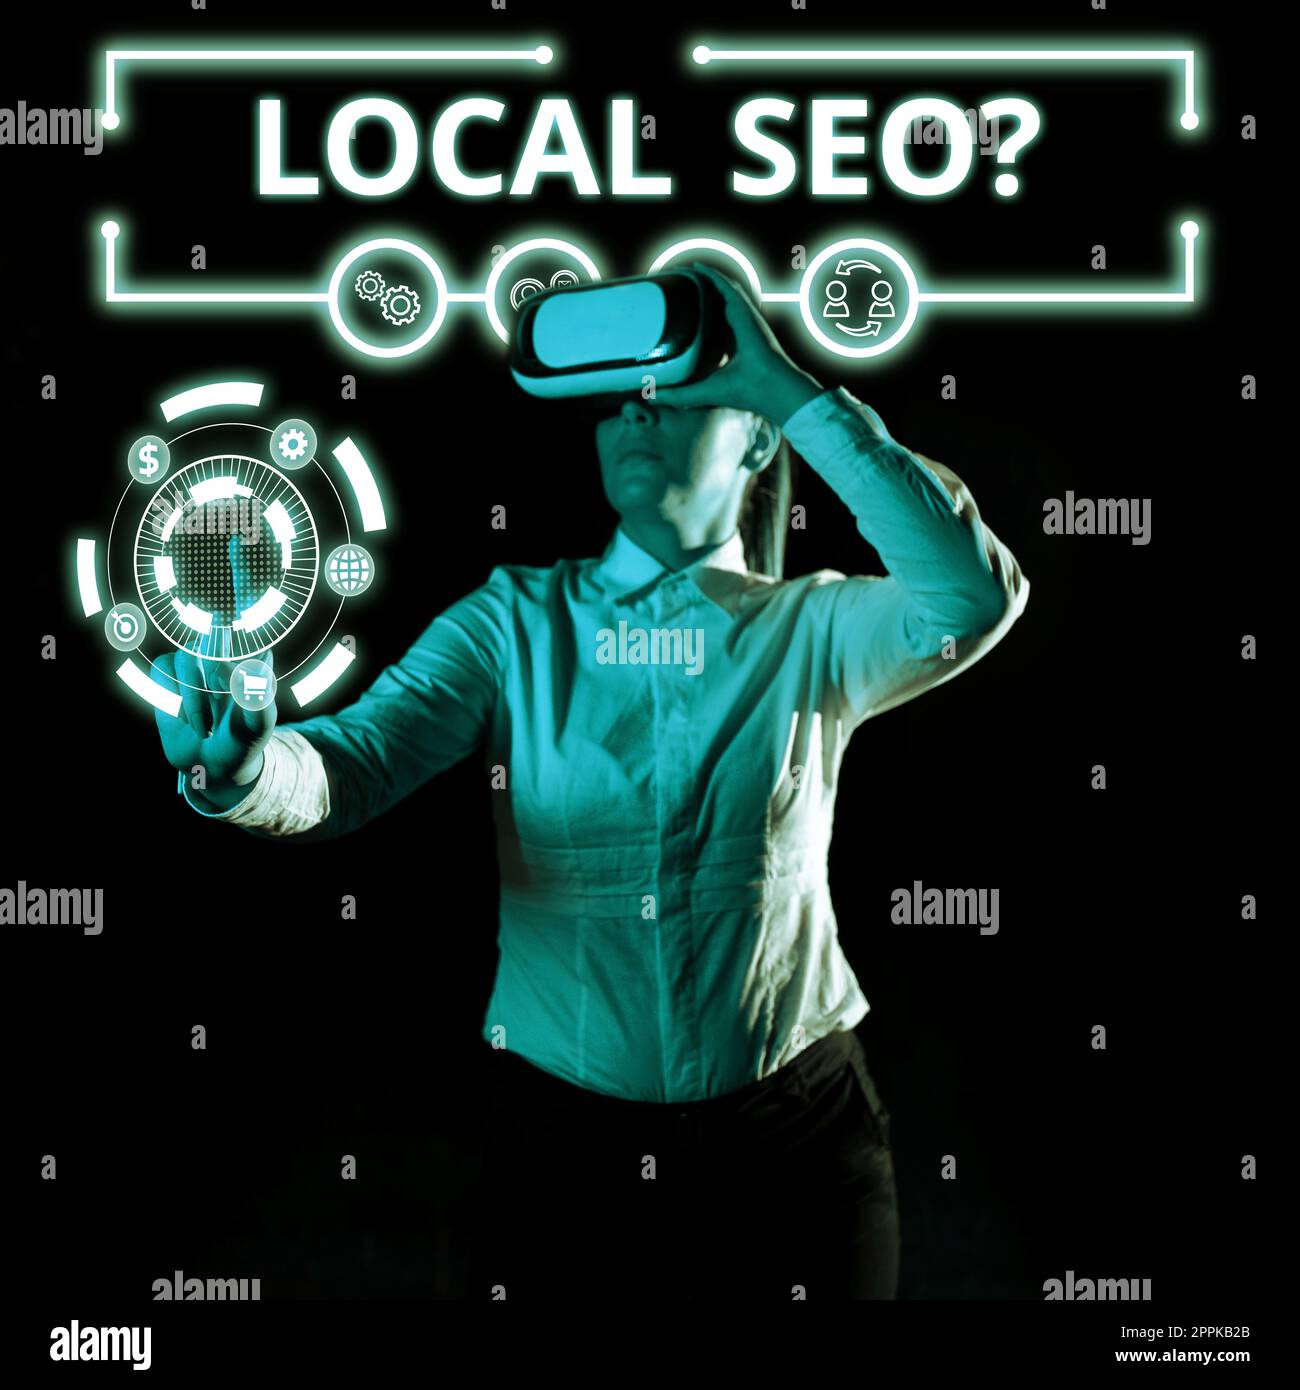 Affichage conceptuel Seo local. Photo conceptuelle incroyablement efficace façon de commercialiser votre entreprise proche en ligne Banque D'Images